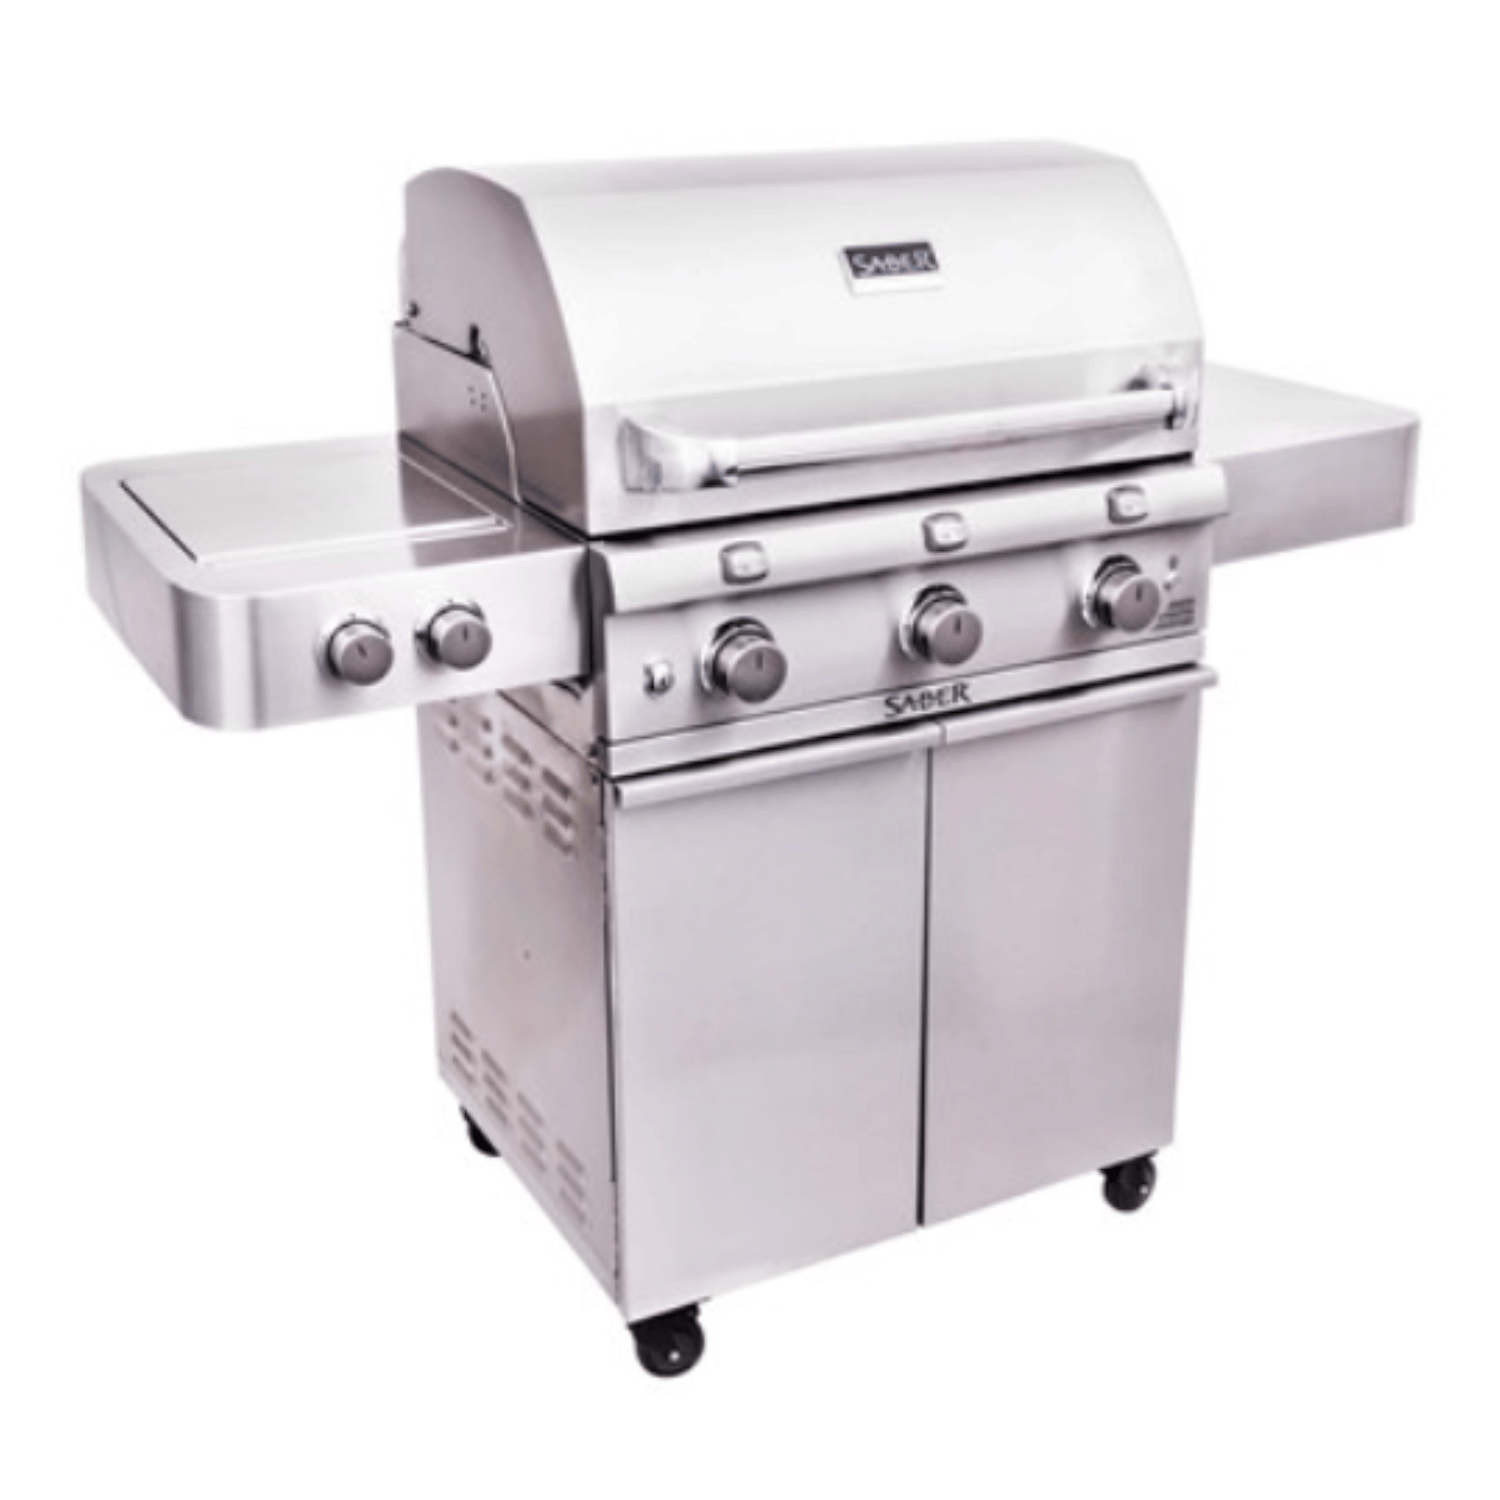 Barbecue Premium 550 – Saber